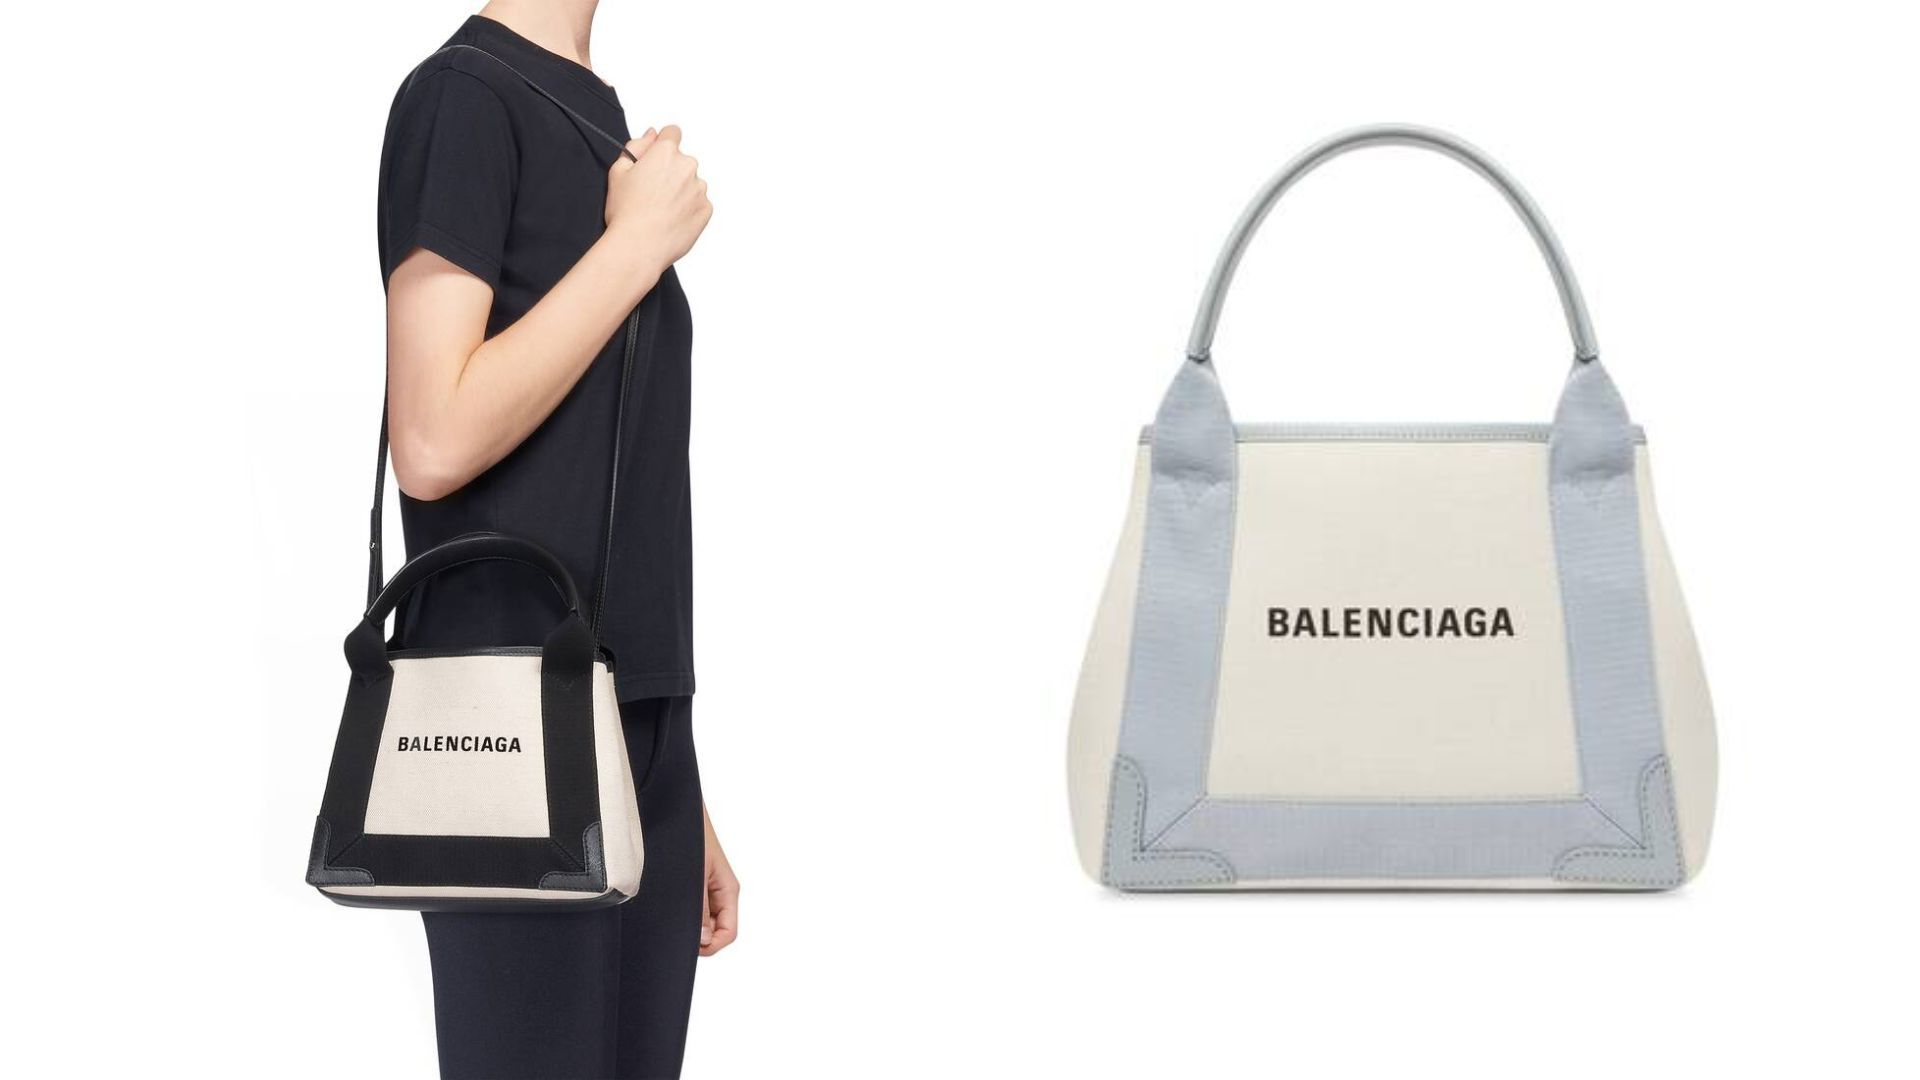 Balenciaga's latest It-bag looks a lot like Thailand's humble